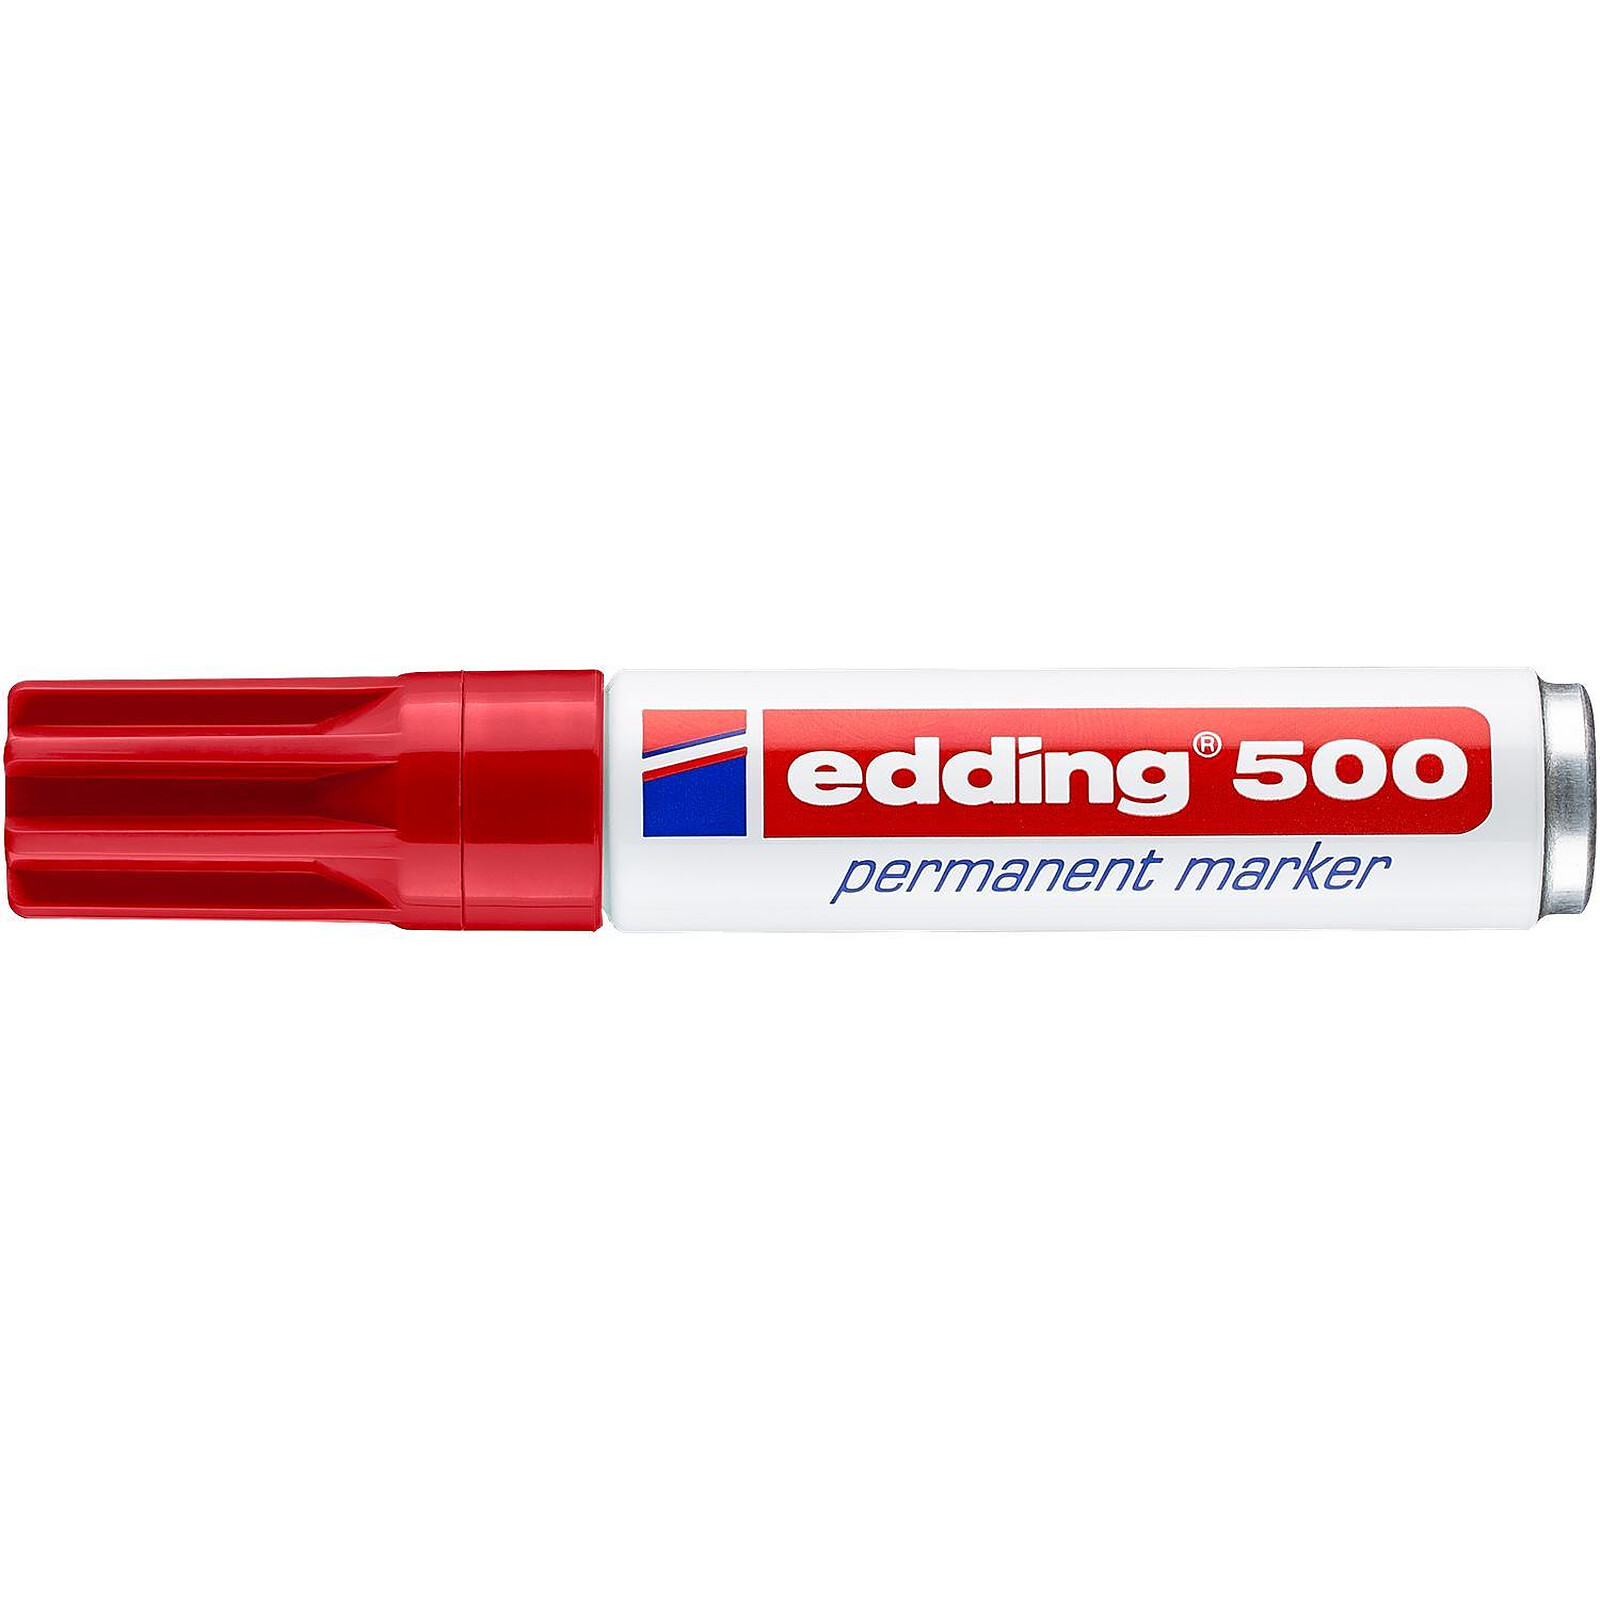 Edding marqueur permanent e-500 couleurs assorties, blister de 3 pièces